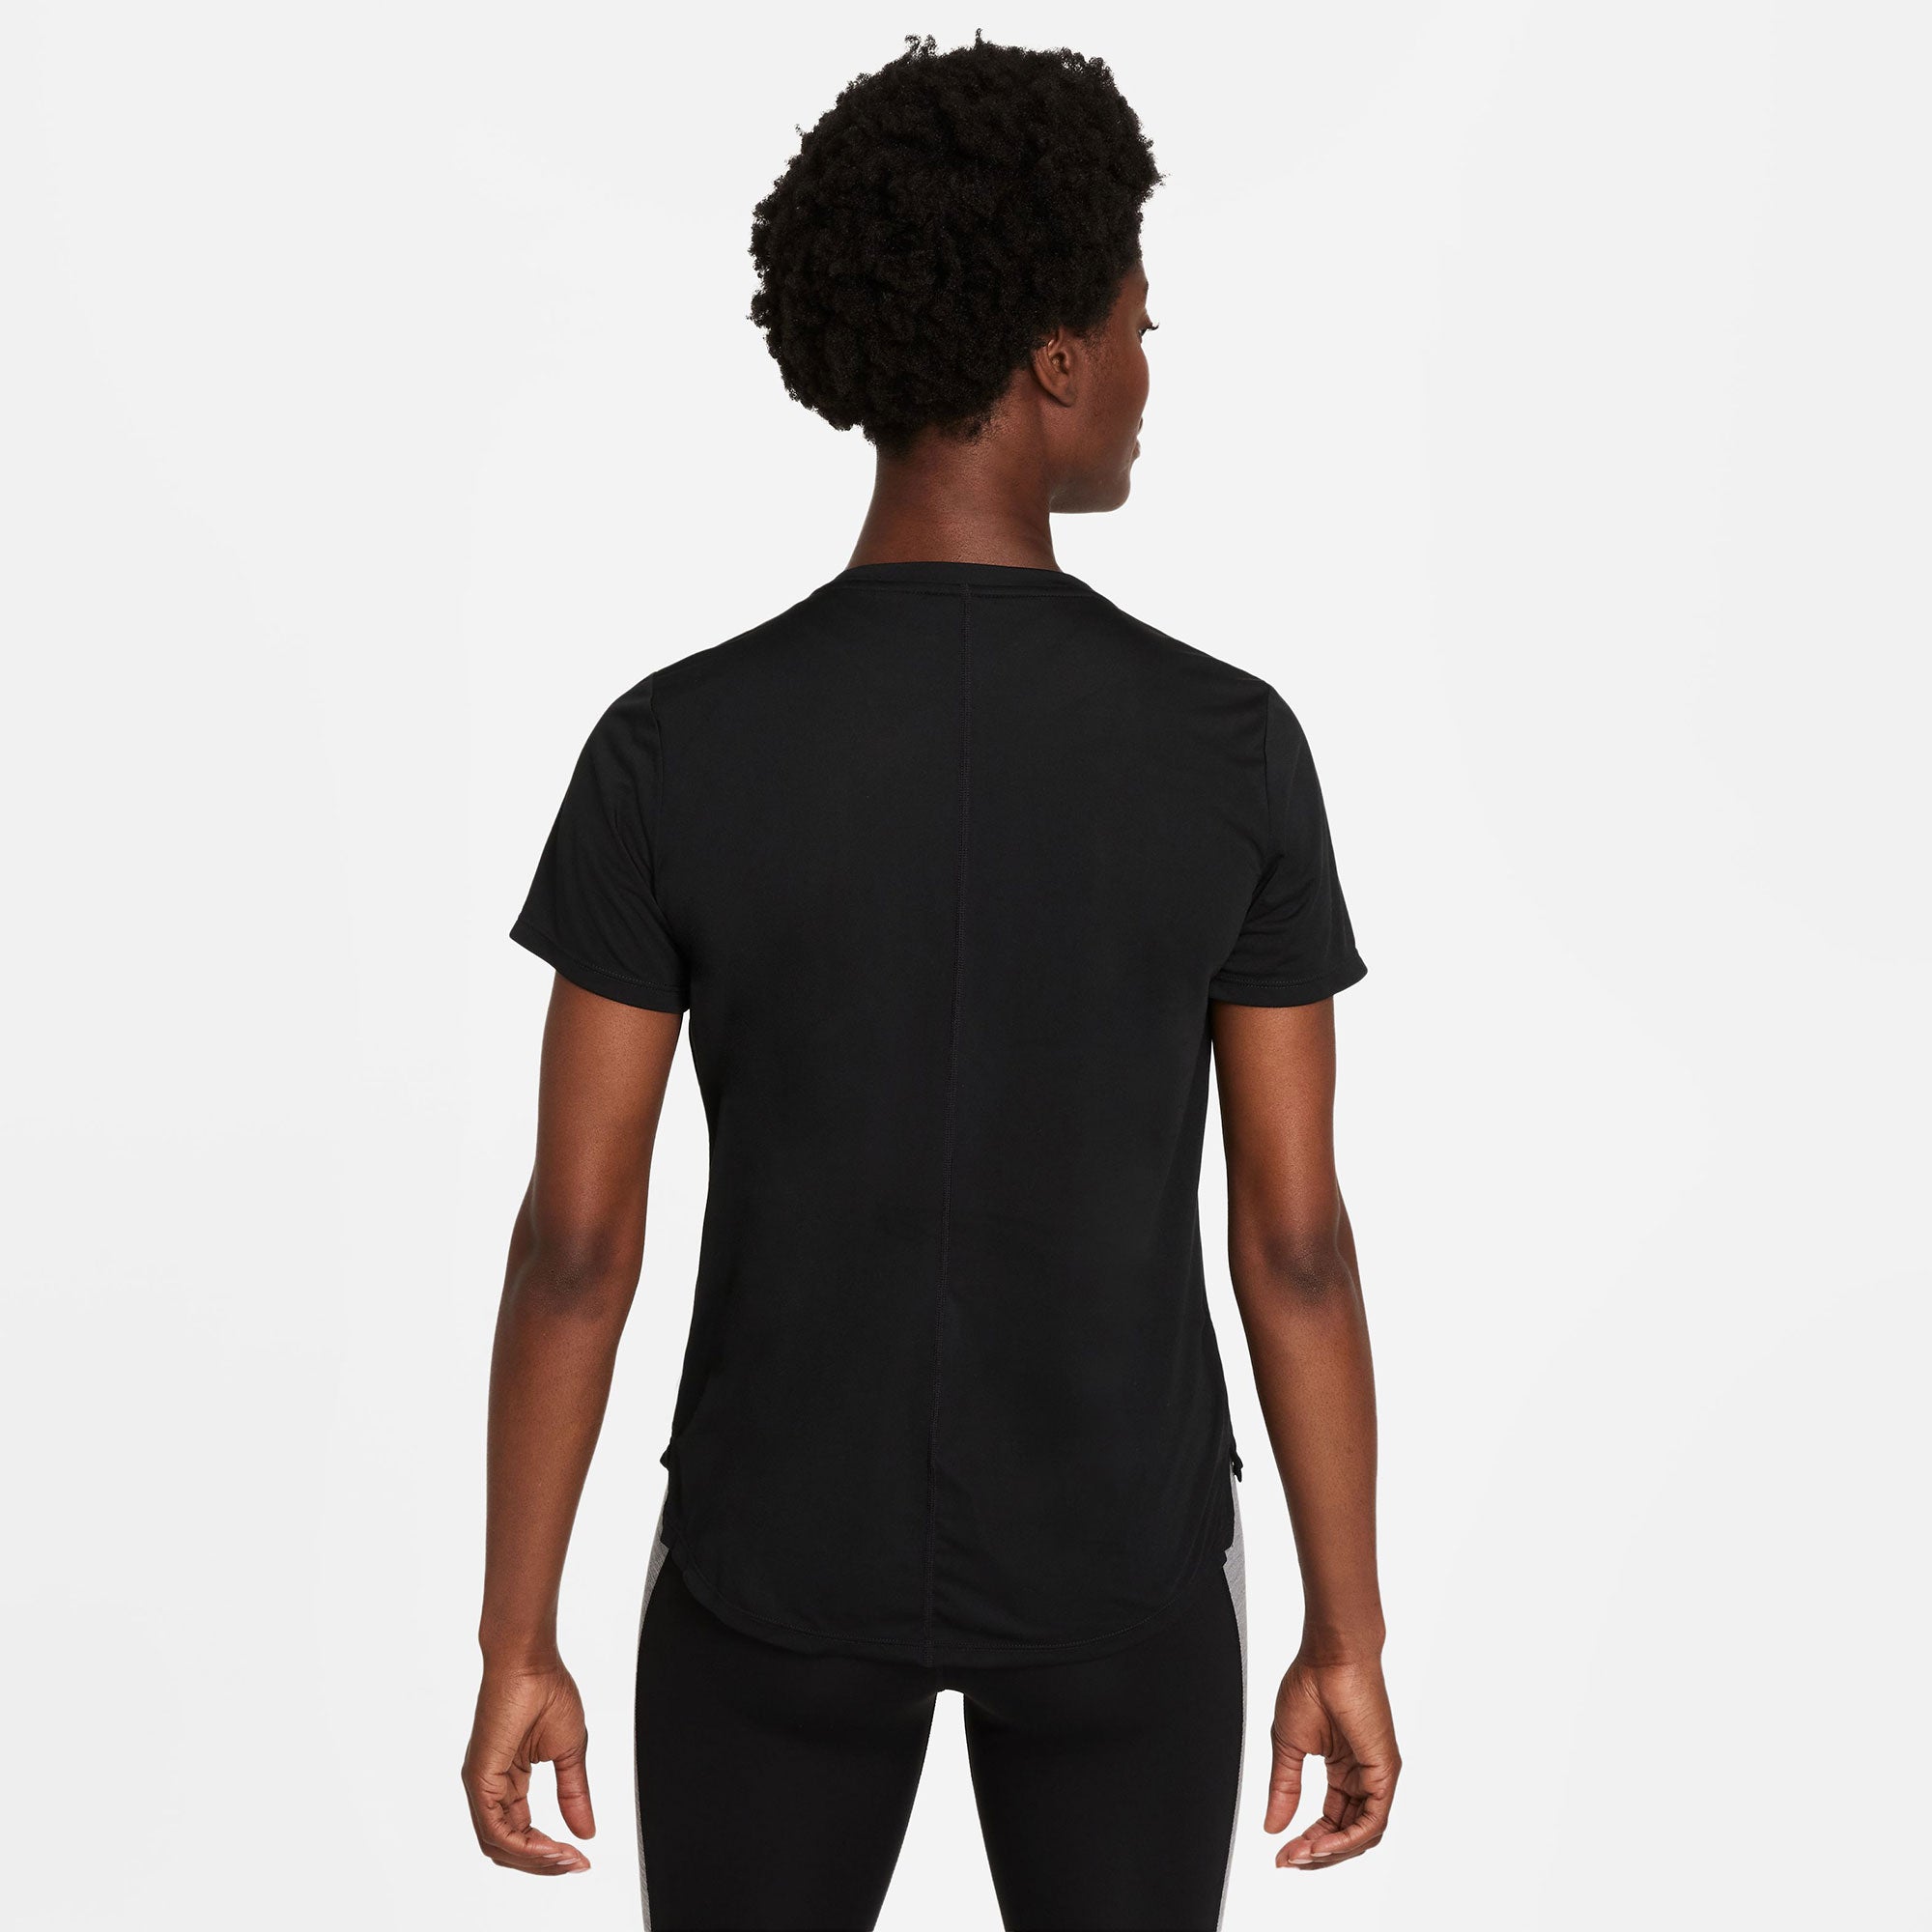 Nike One Dri-FIT Women's Standard Fit Shirt Black (2)